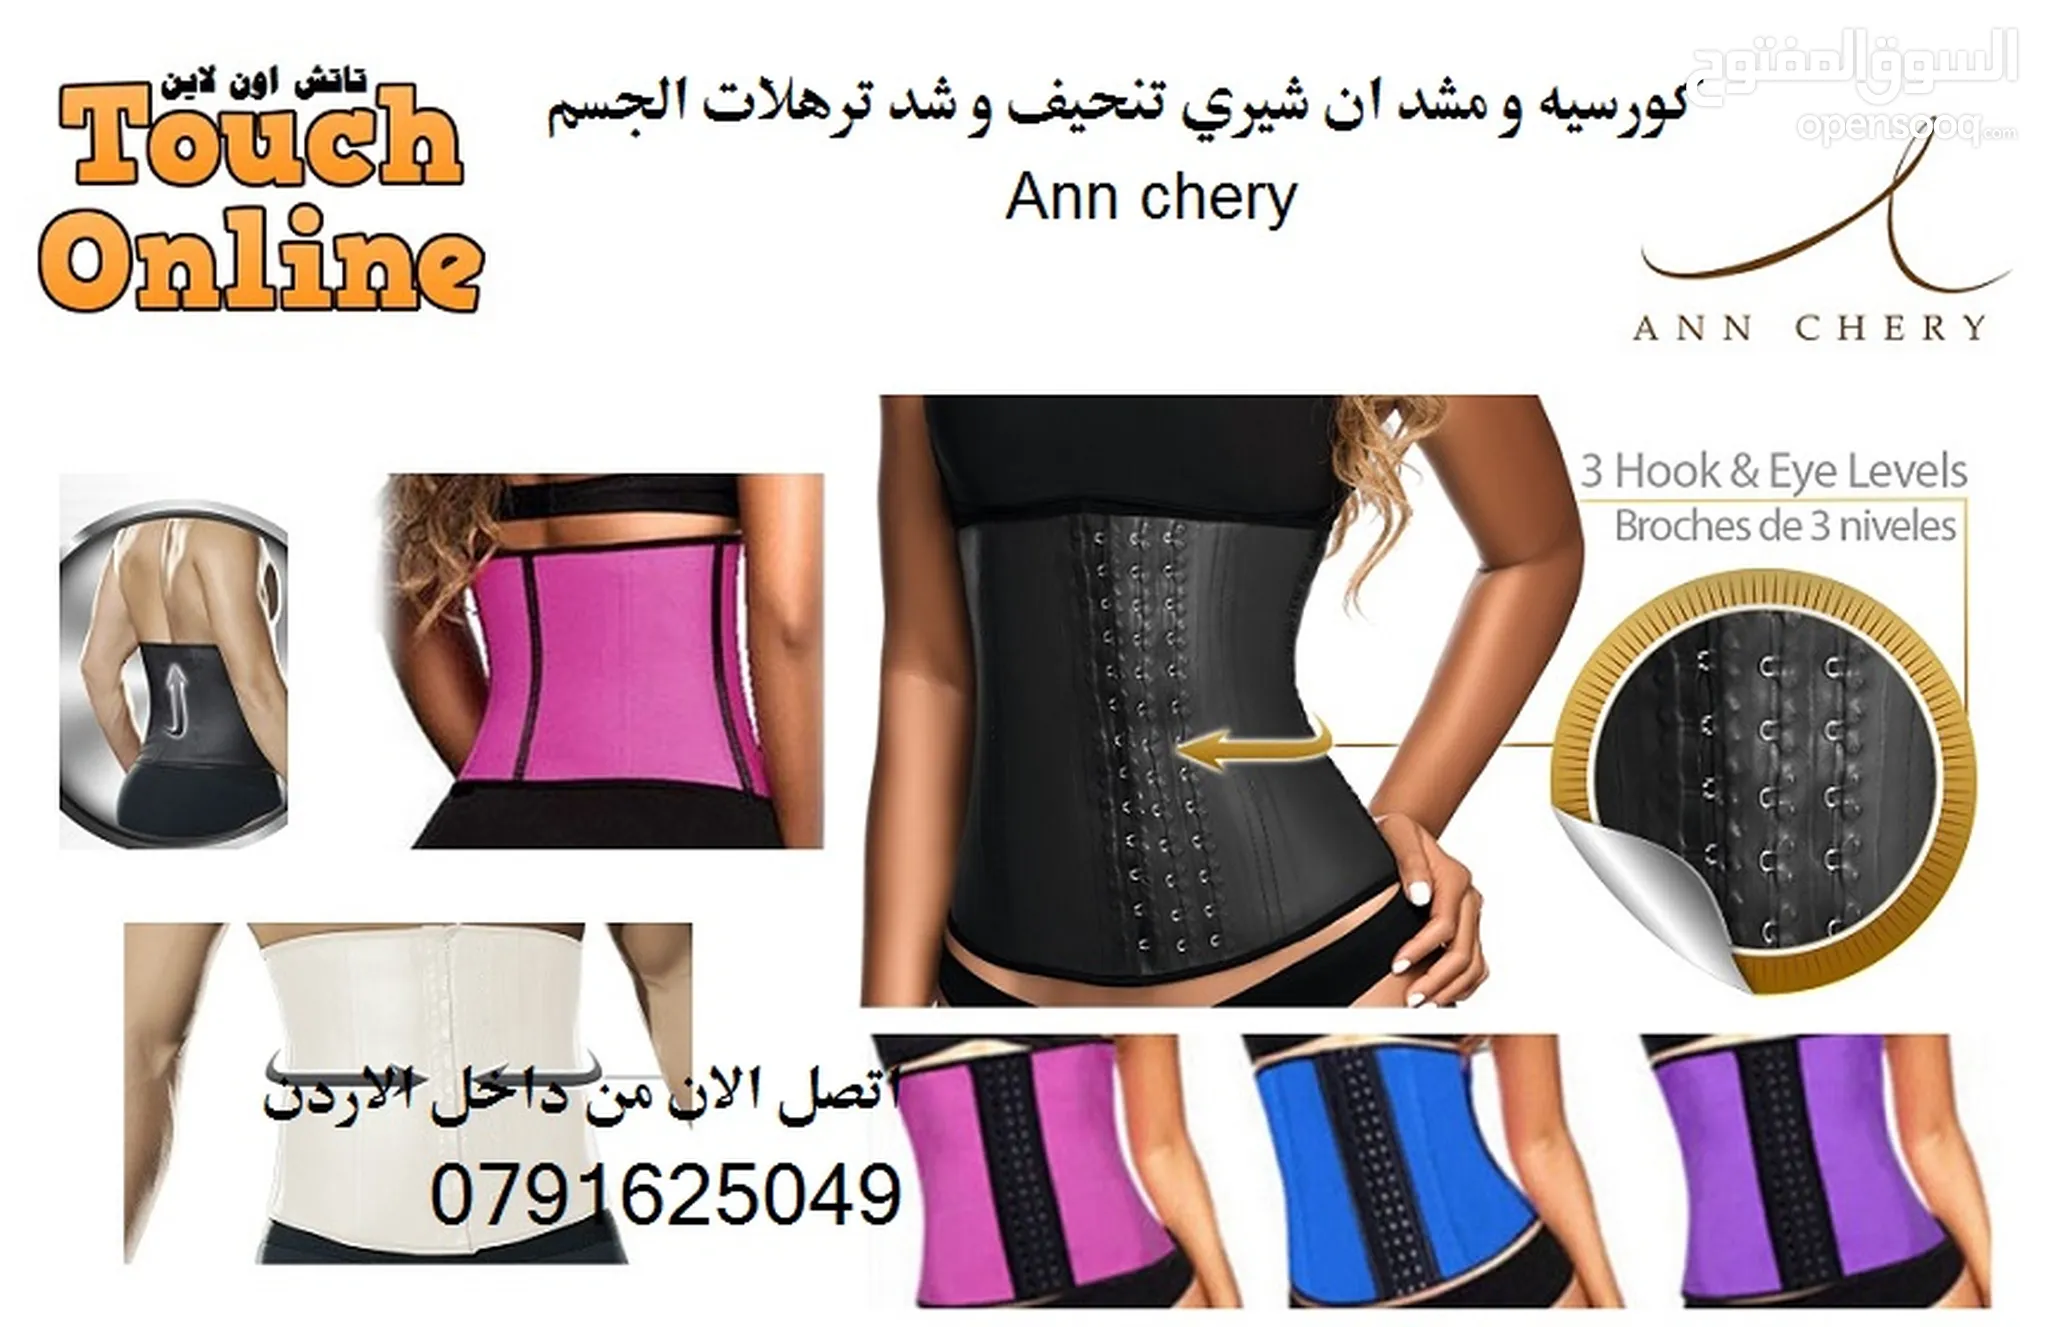 مشدات نسائية للبيع : ملابس داخلية - ملابس نوم : ملابس وأزياء نسائية في  الأردن : تسوق اونلاين أجدد الموديلات